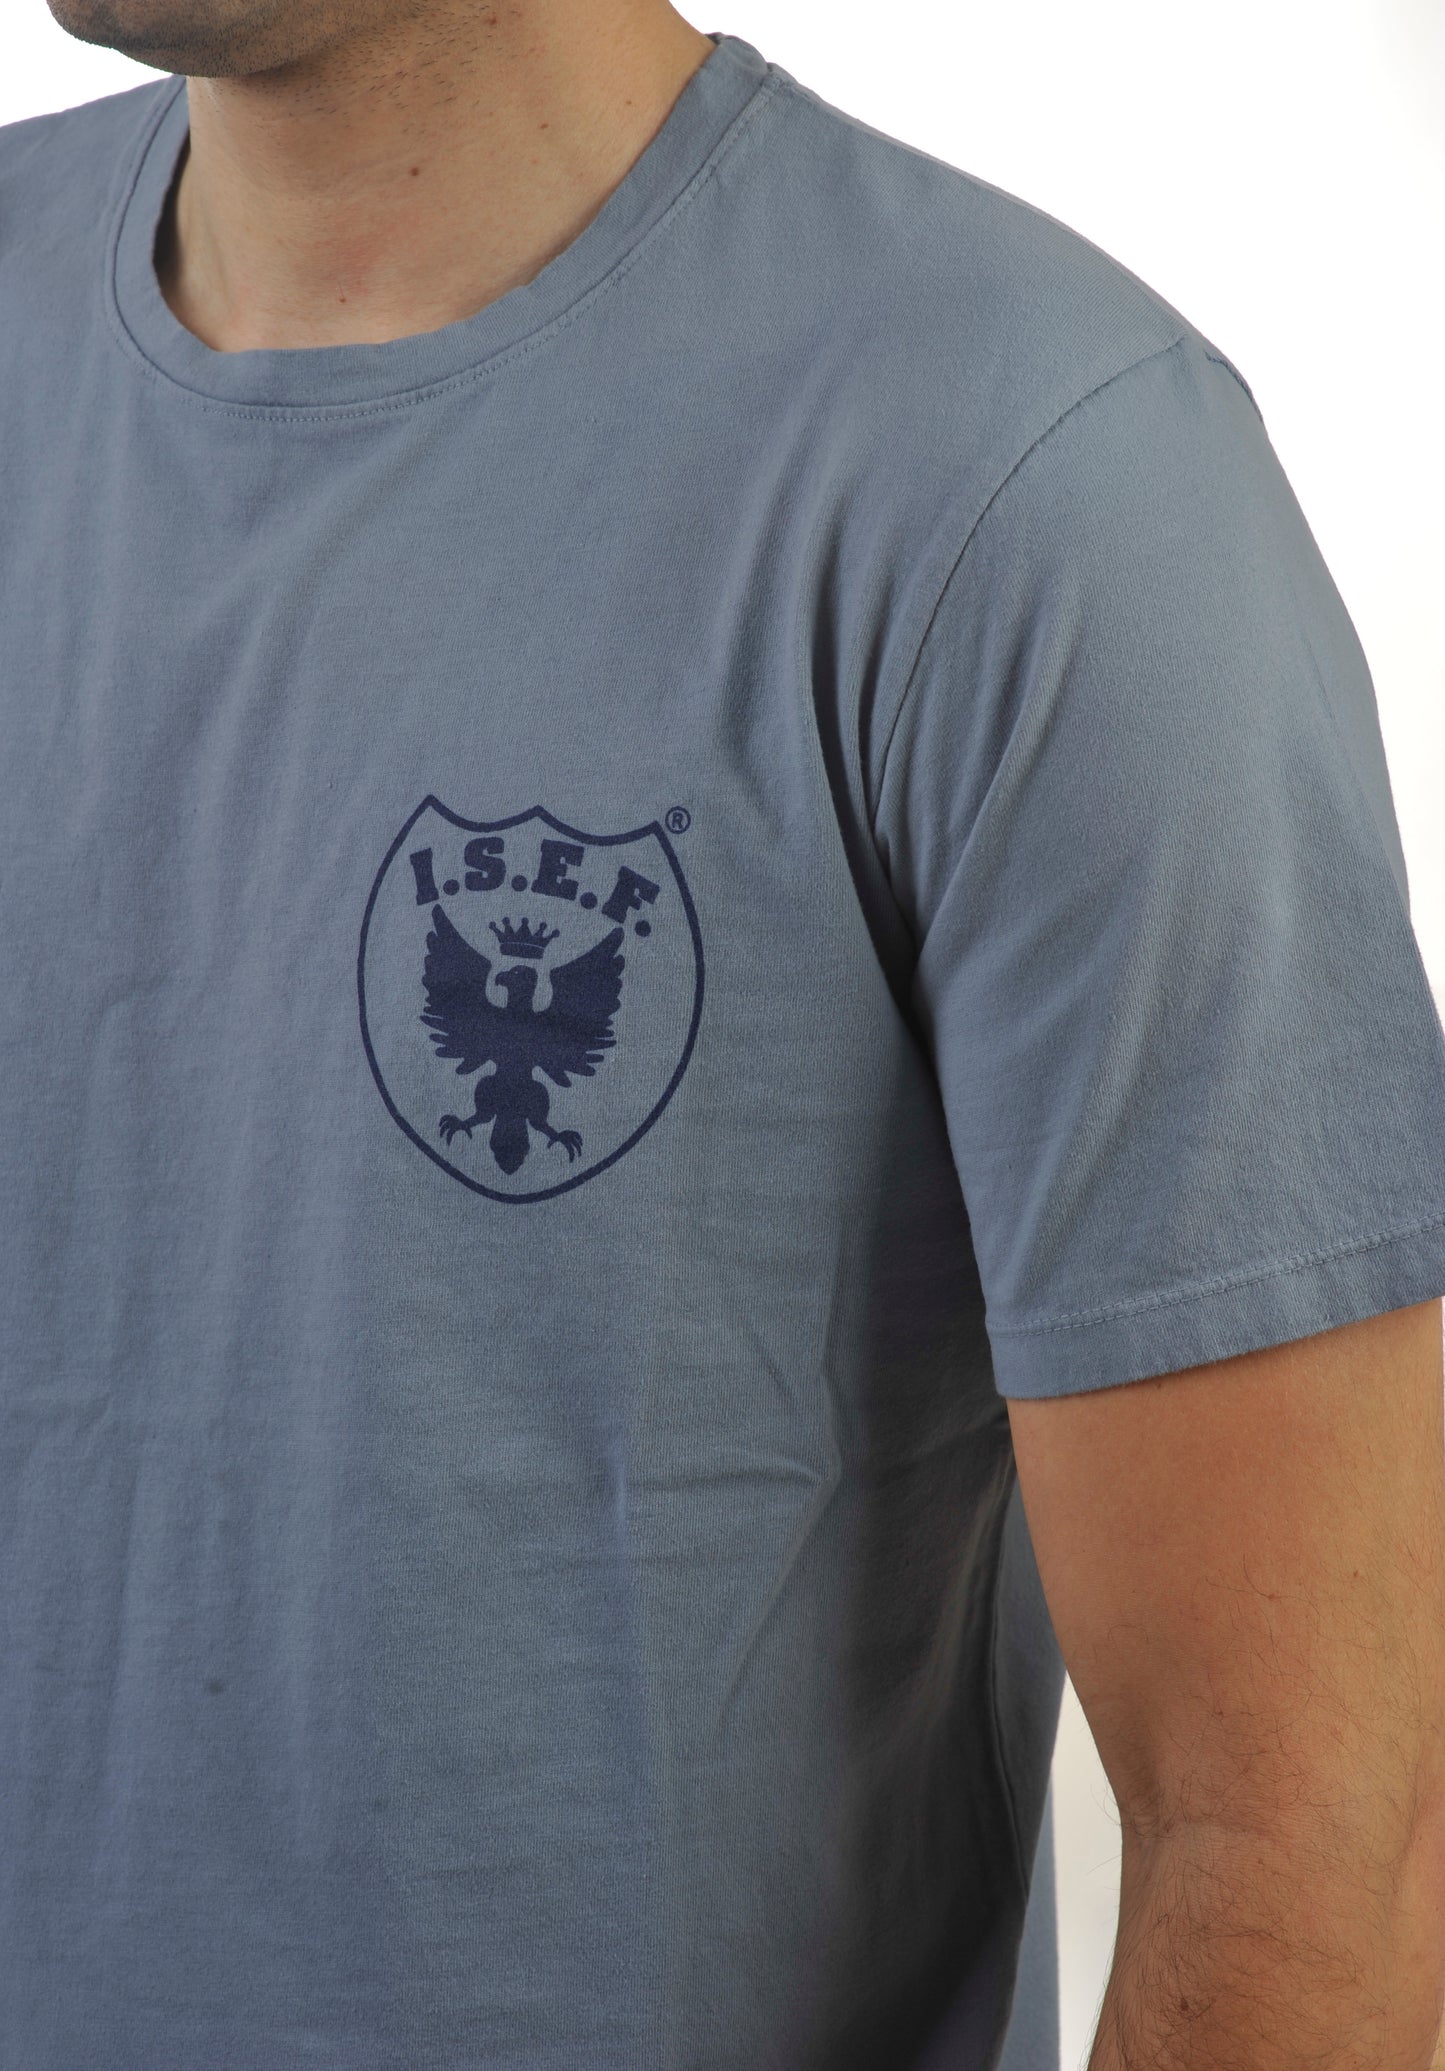 ISEF1952 - Azzurro - Cagliari T-Shirt